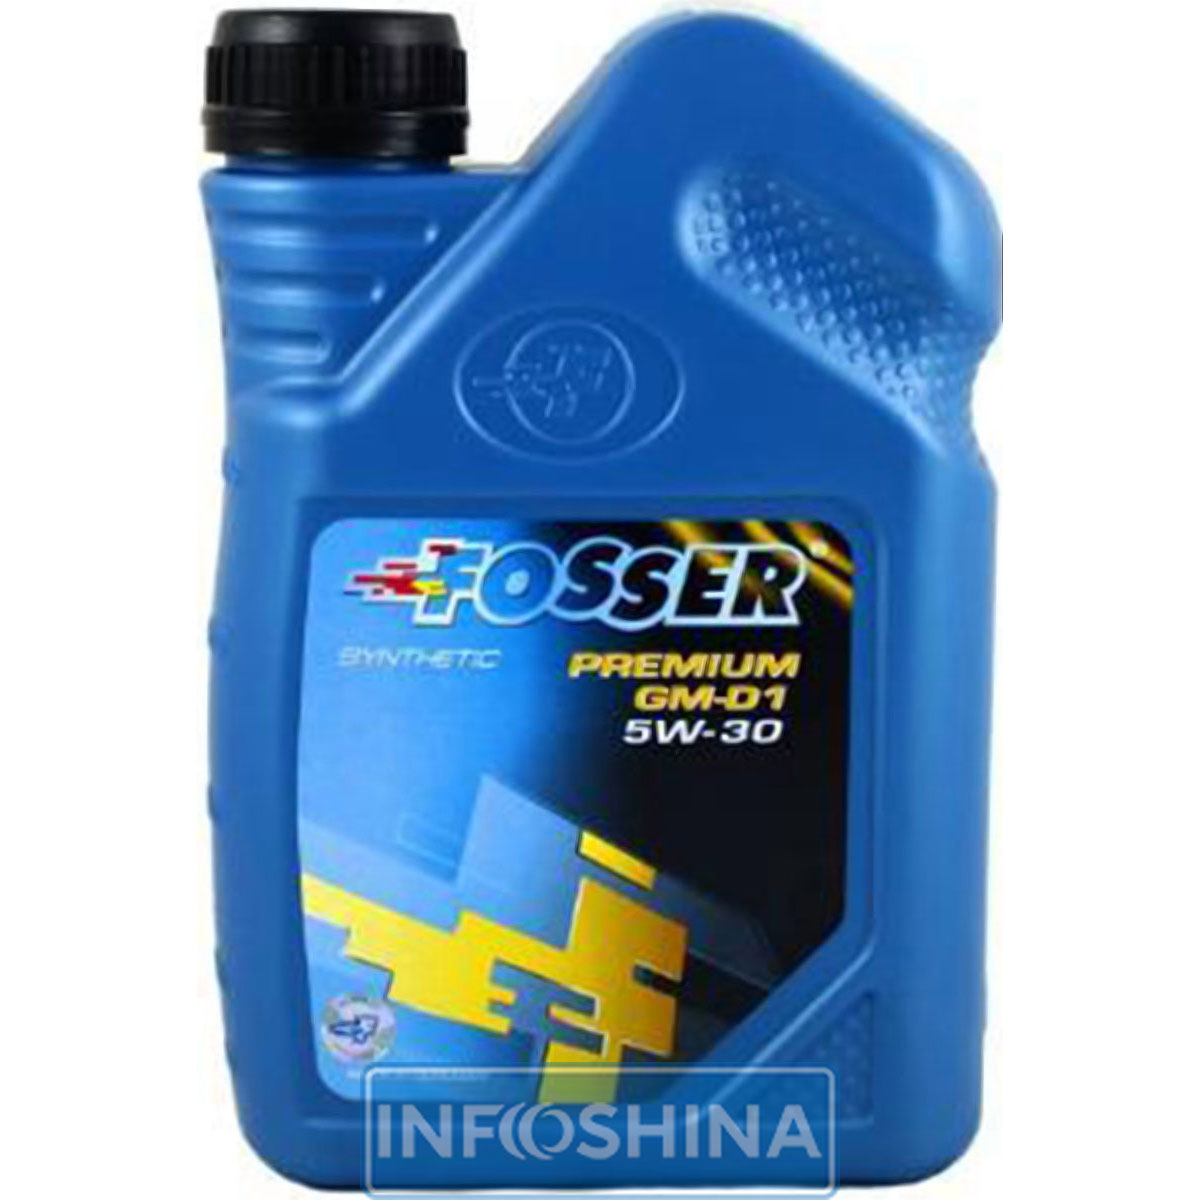 Fosser Premium GM-D1 5W-30